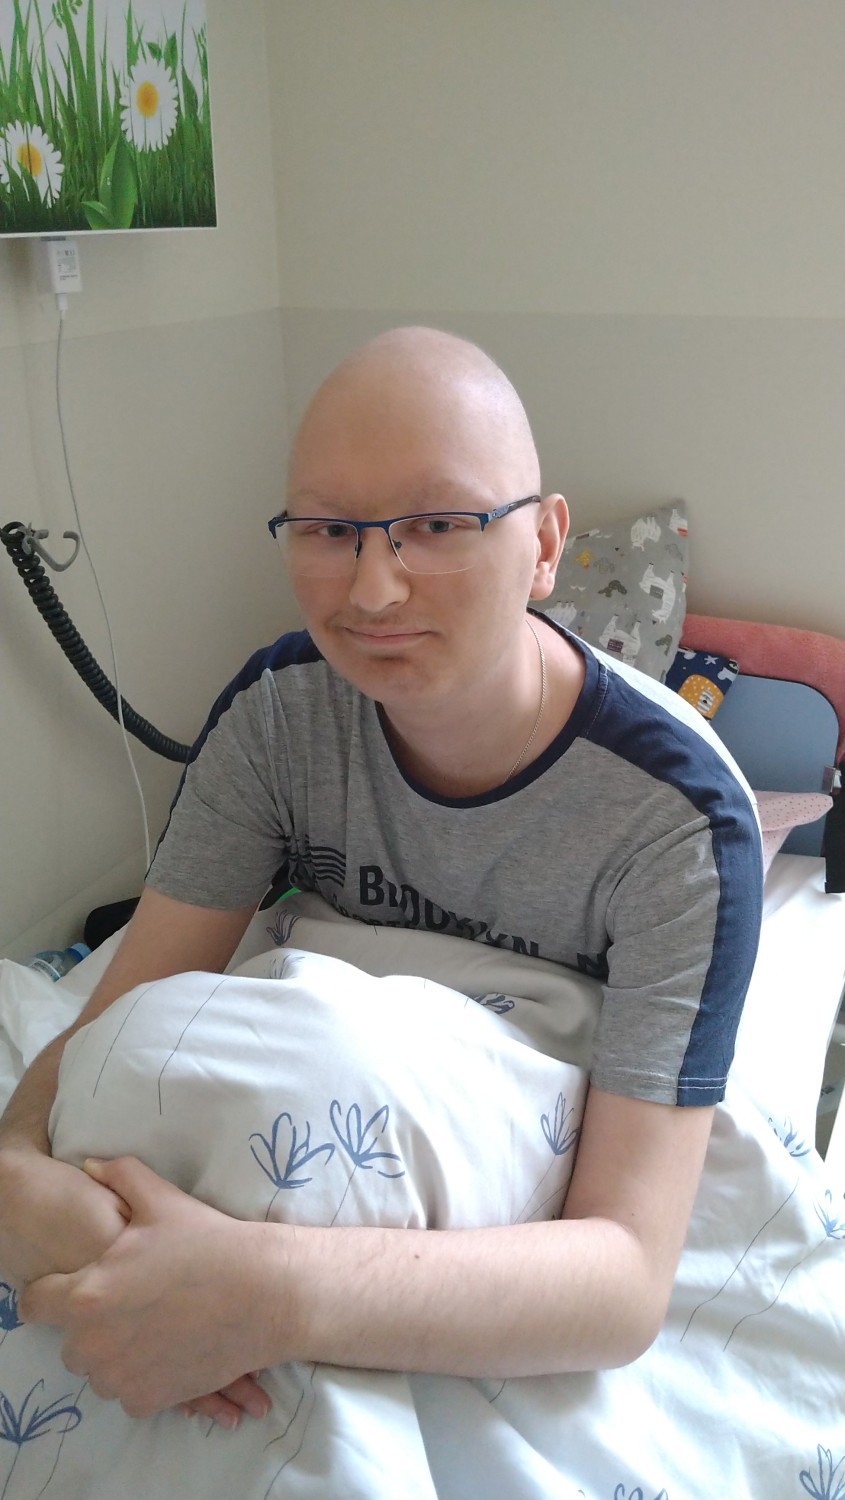 Krystian Sabiszewski z Helu walczy z rakiem od trzech lat!